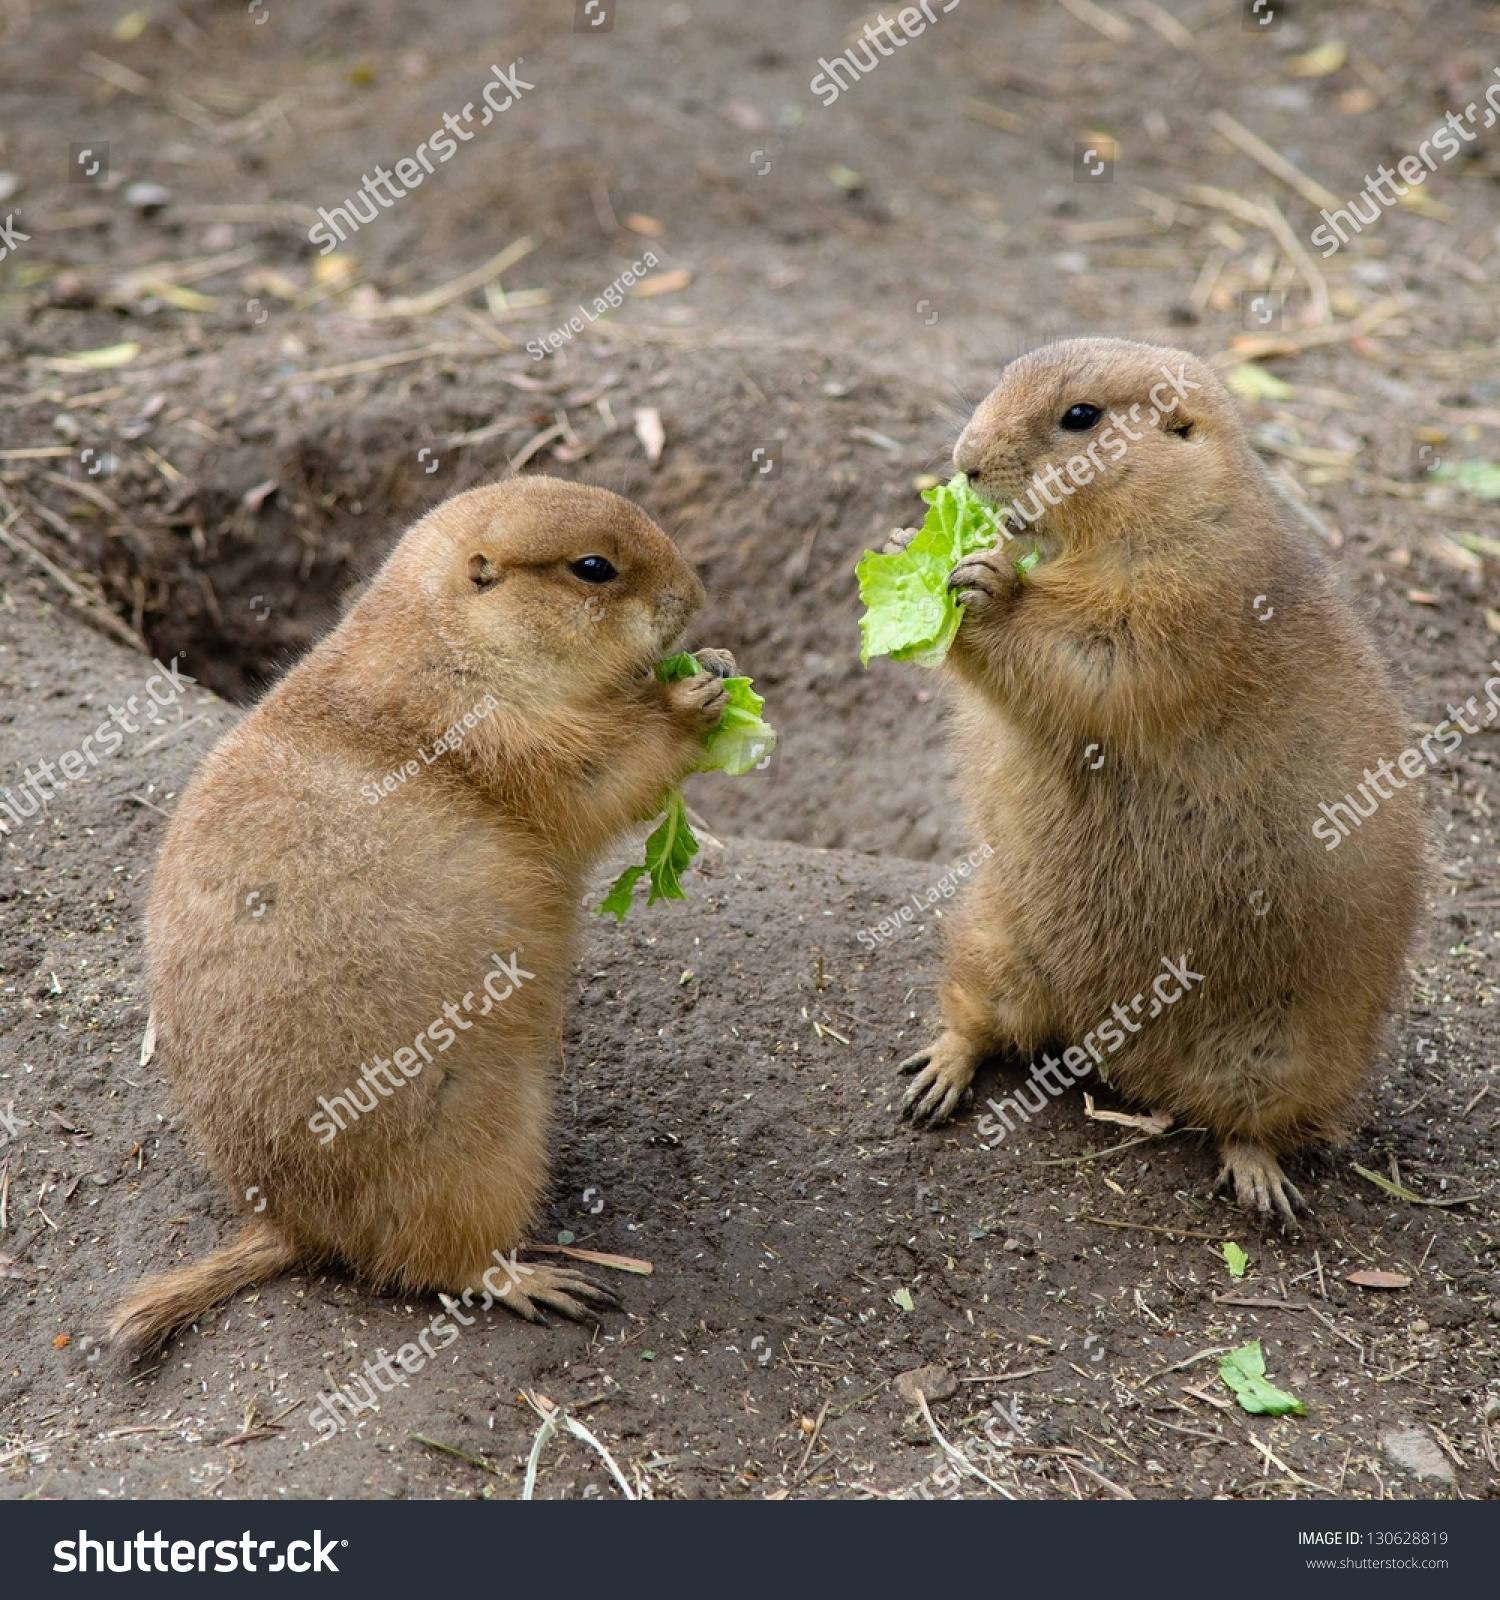 Two Prairie Dogs Eating Lettuce Stock Photo 130628819 - Shutterstock